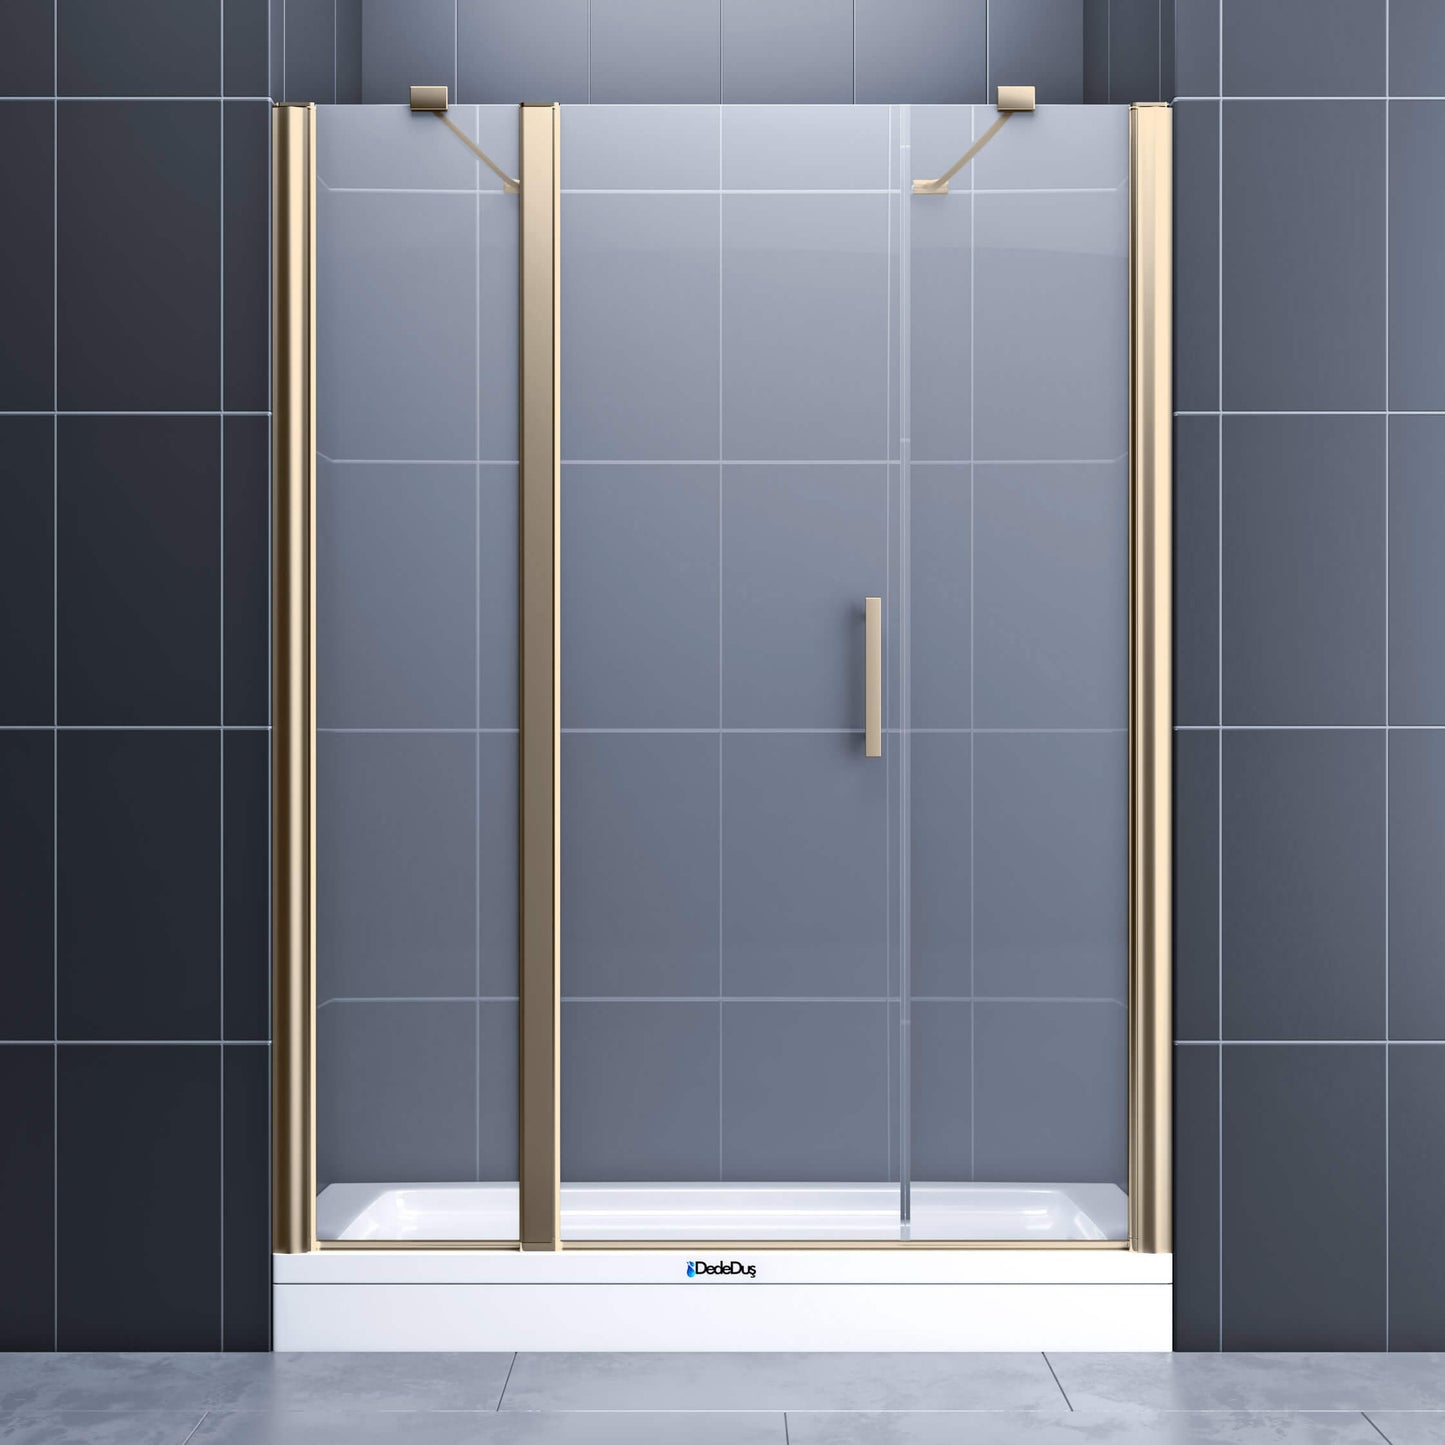 Duvardan duvara, 2 sabit, 1 boy menteşeli kapı, altın profil renkli duşakabin Kuzguncuk Dede Duş